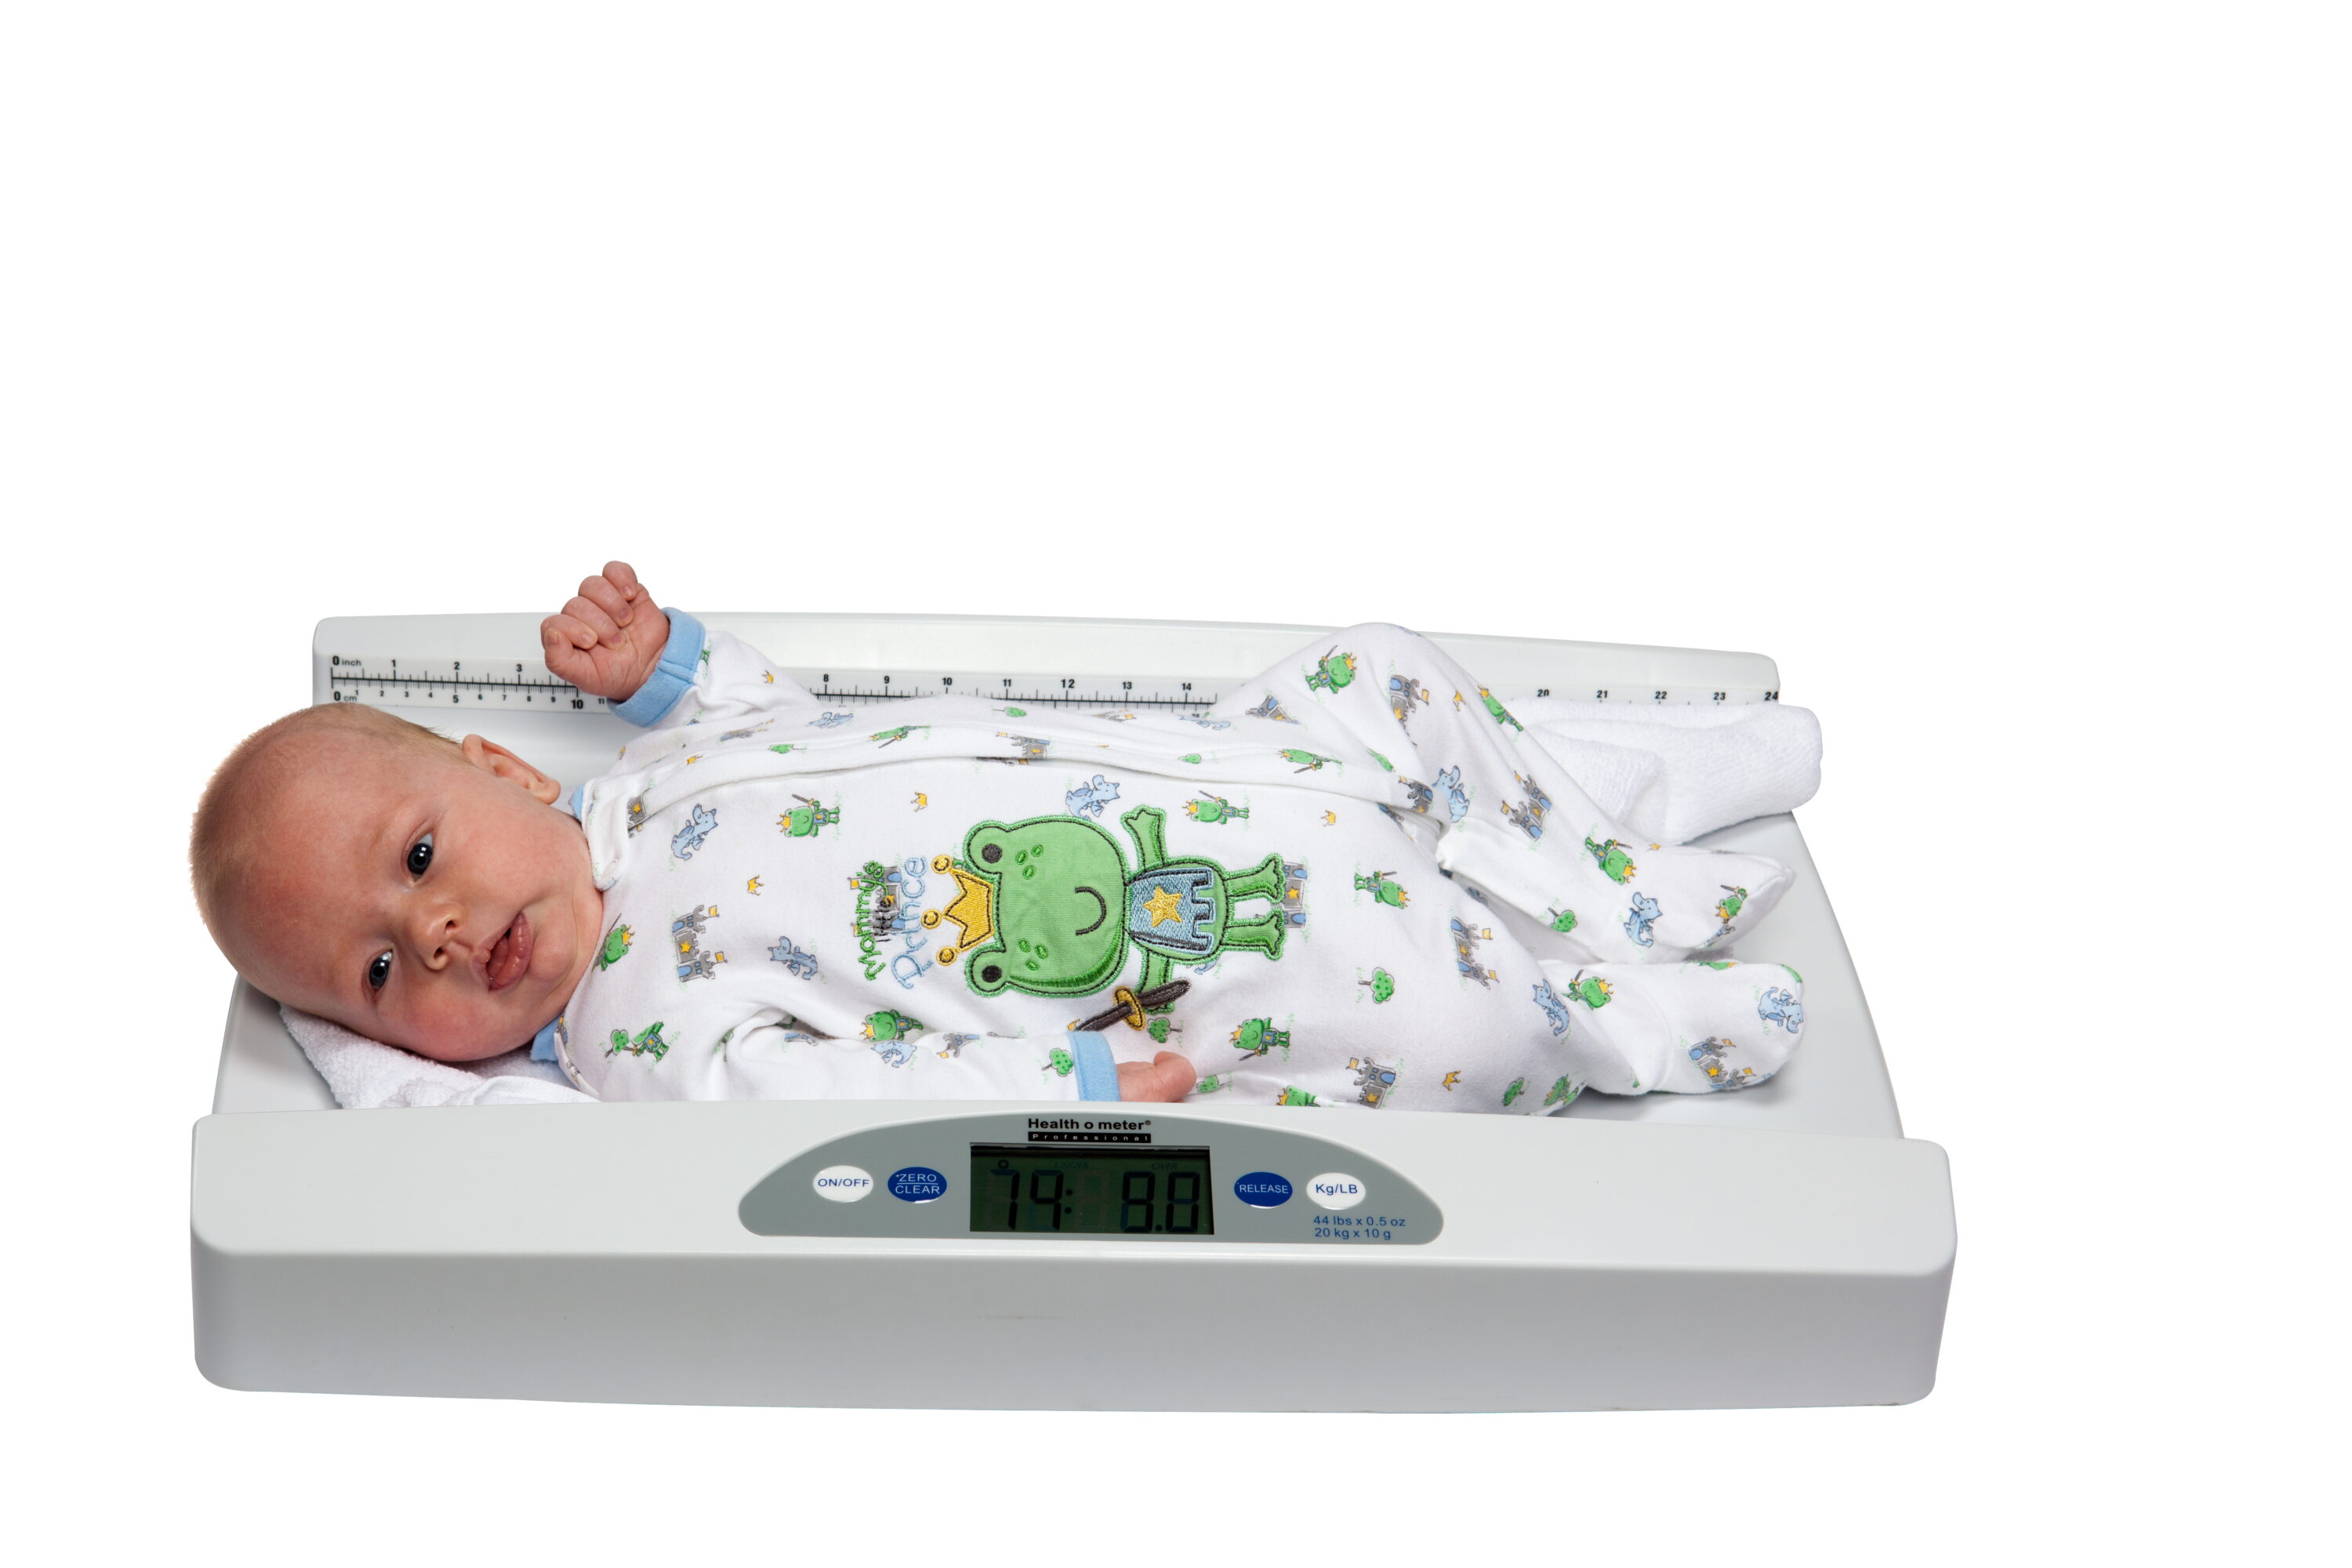 Báscula Electrónica Pesa Bebés Infantómetro Digital